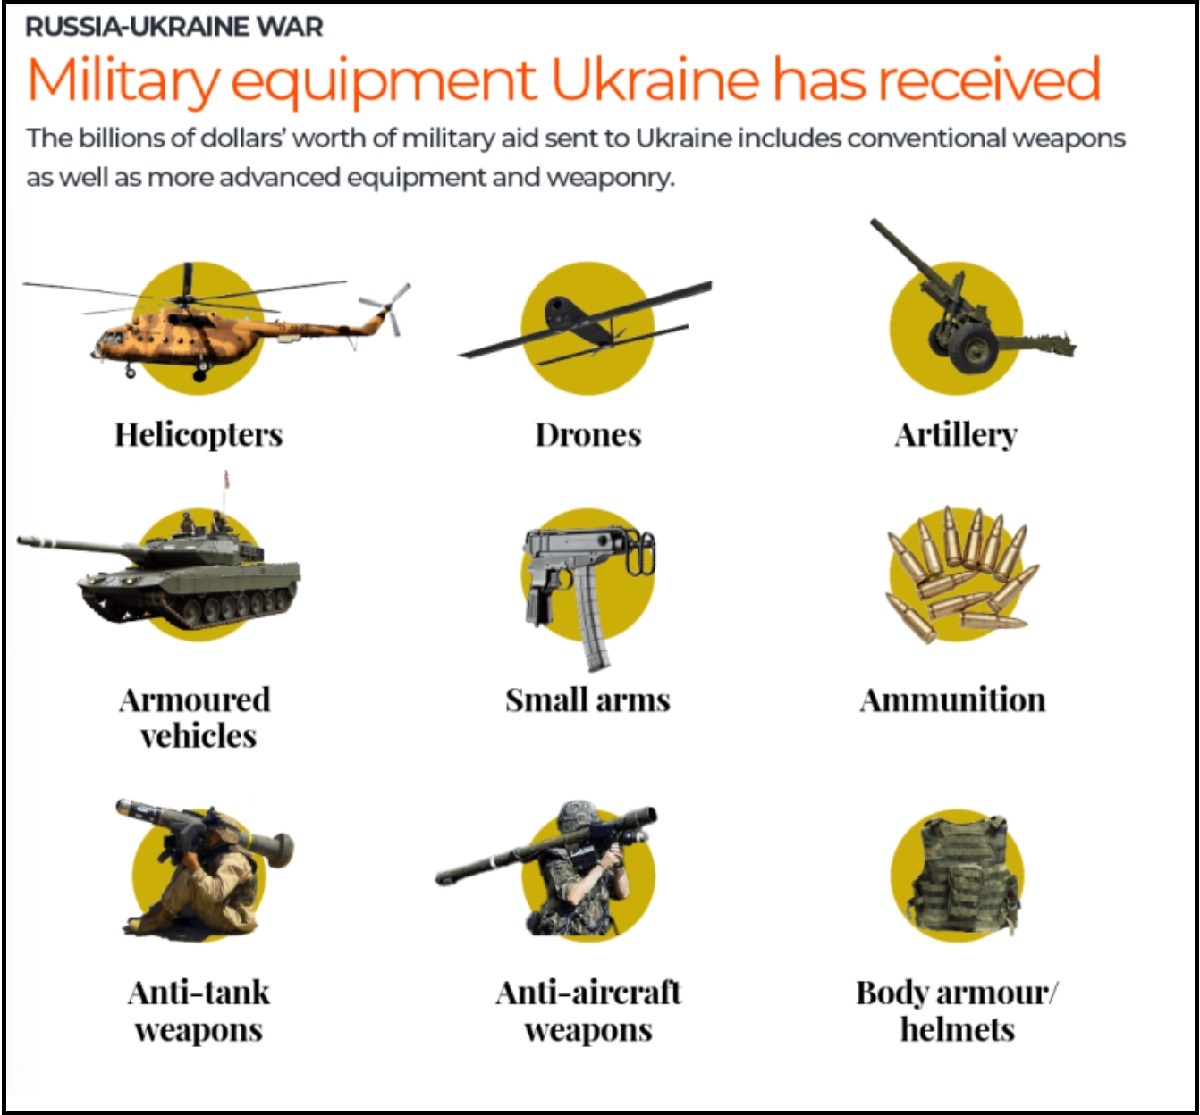 سلاح های استفاده شده در جنگ روسیه و اوکراین